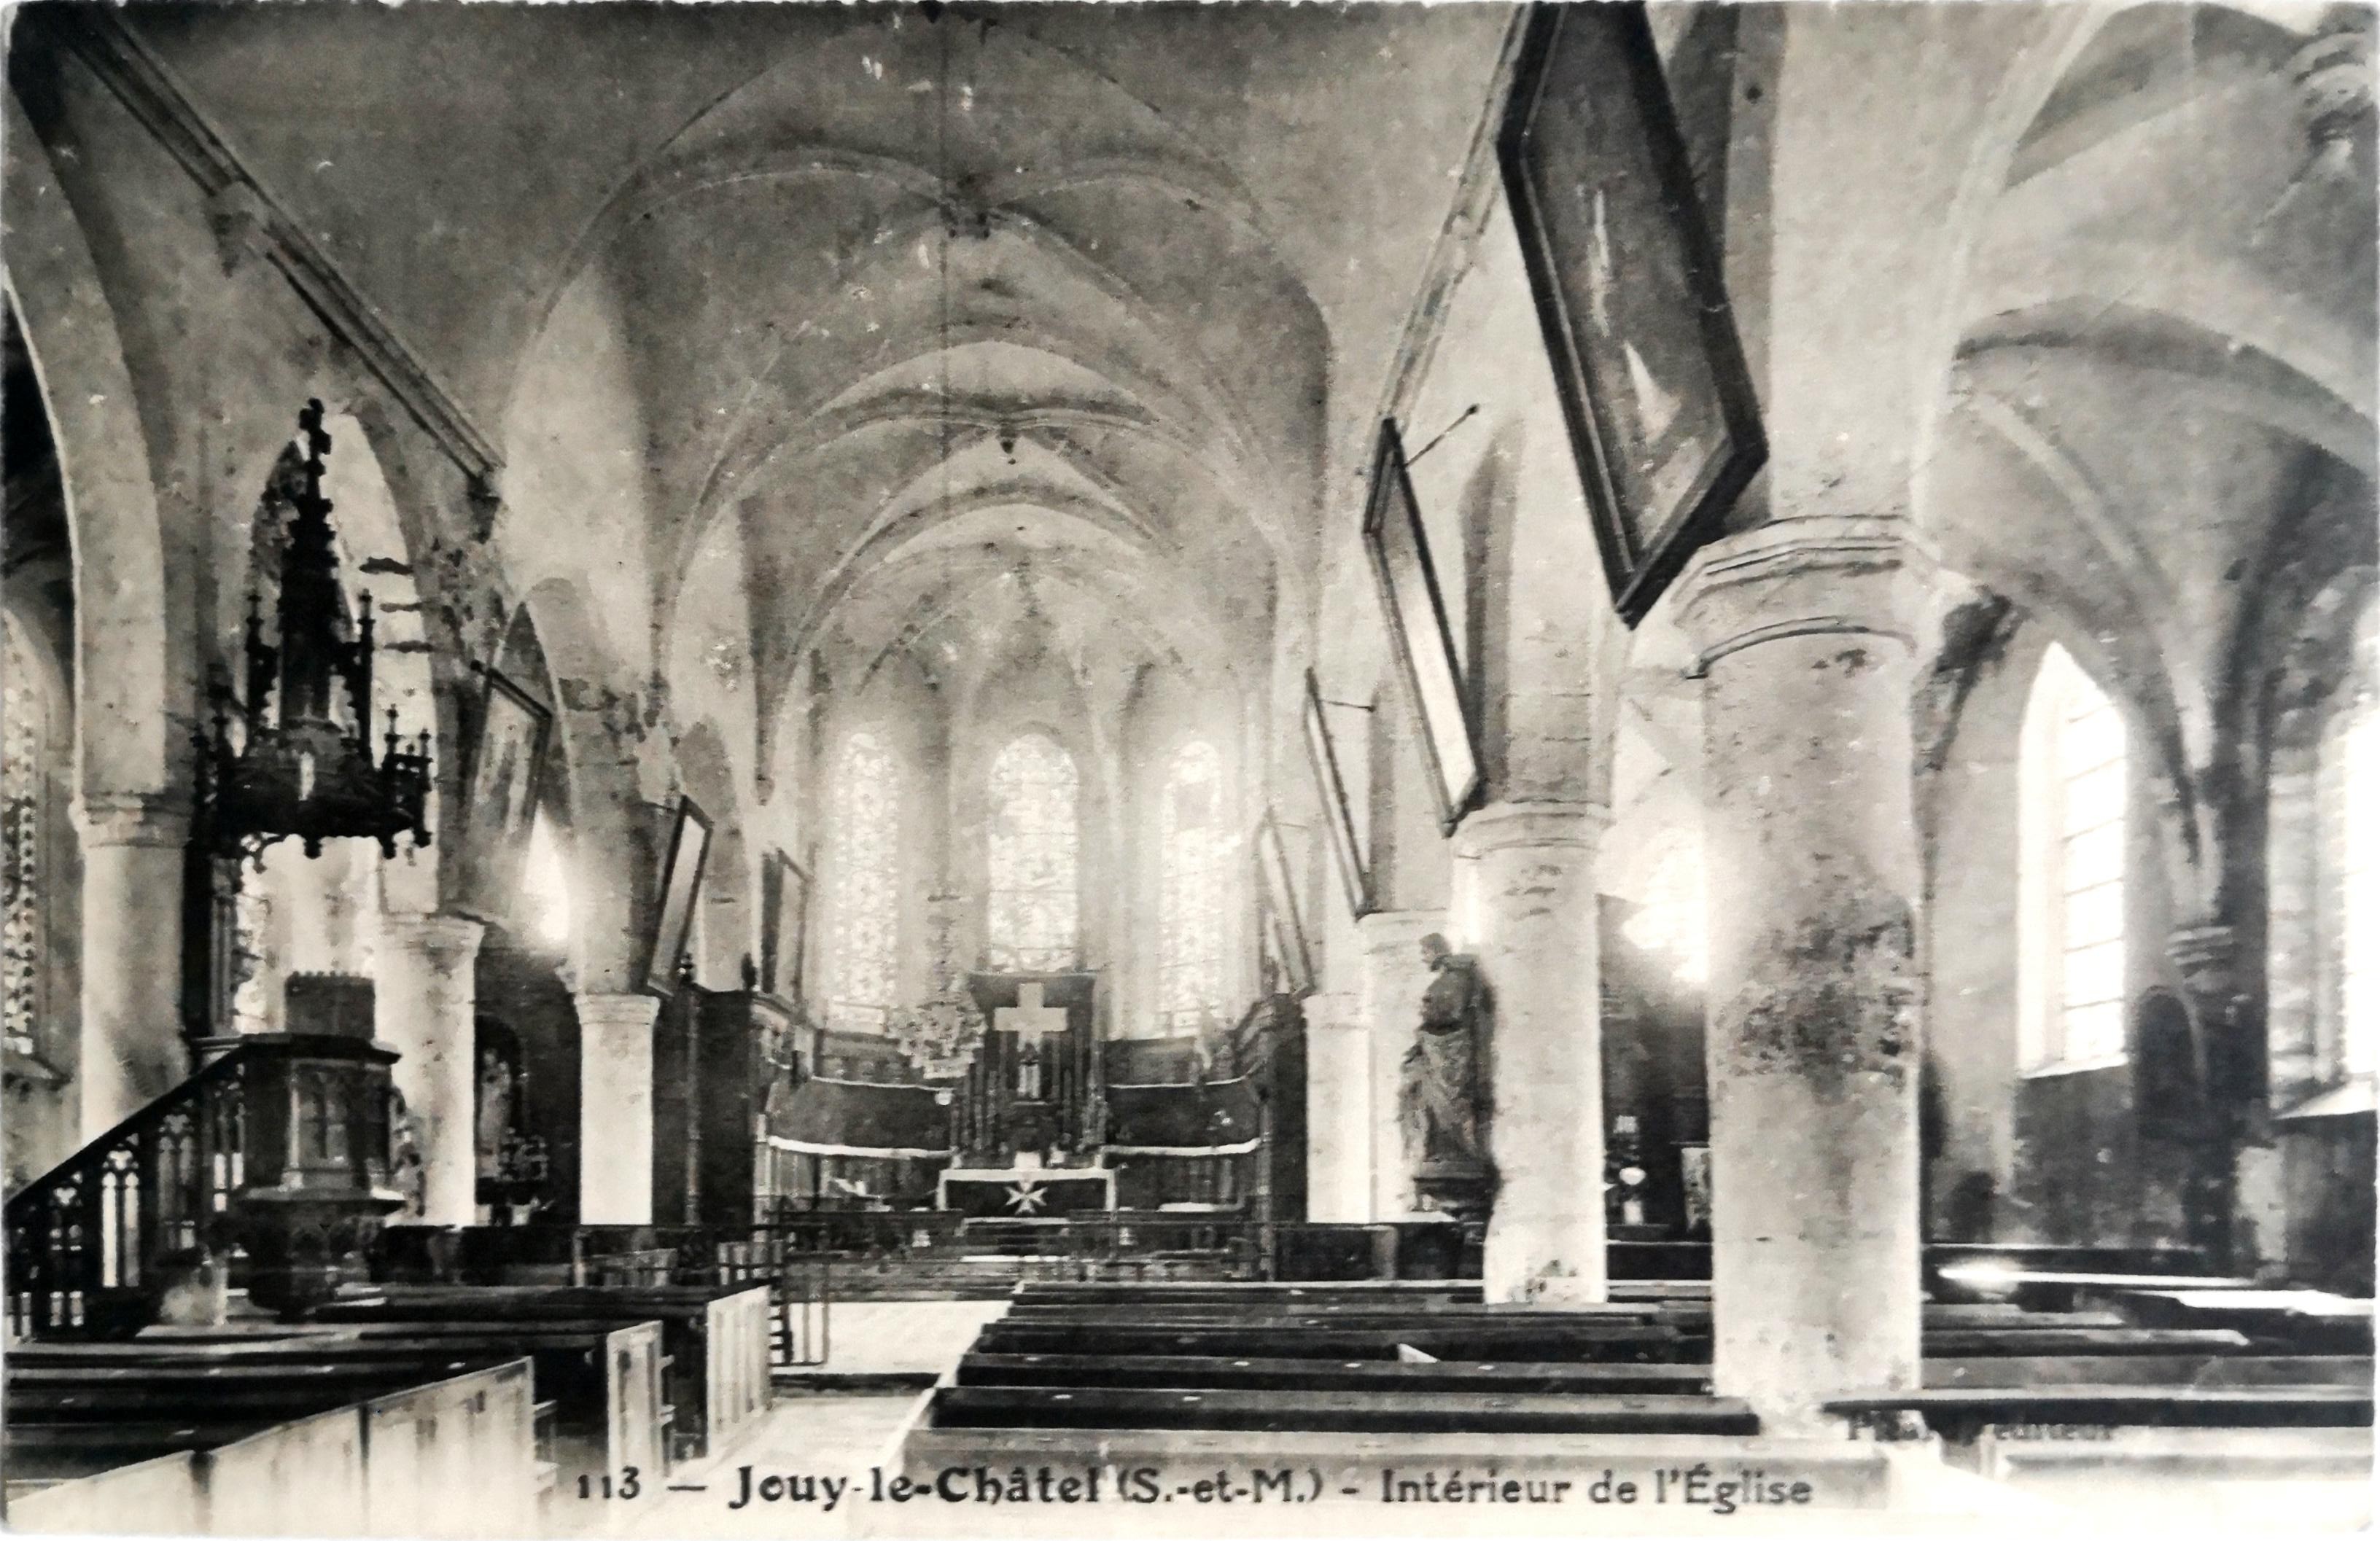 La Chaire vue de la nef centraleÉglise de Jouy-le-Châtel - Repères P4Un inventaire de 1905 fait apparaître la chaire - aujourd'hui disparue - comme un don de la famille Silvestre.